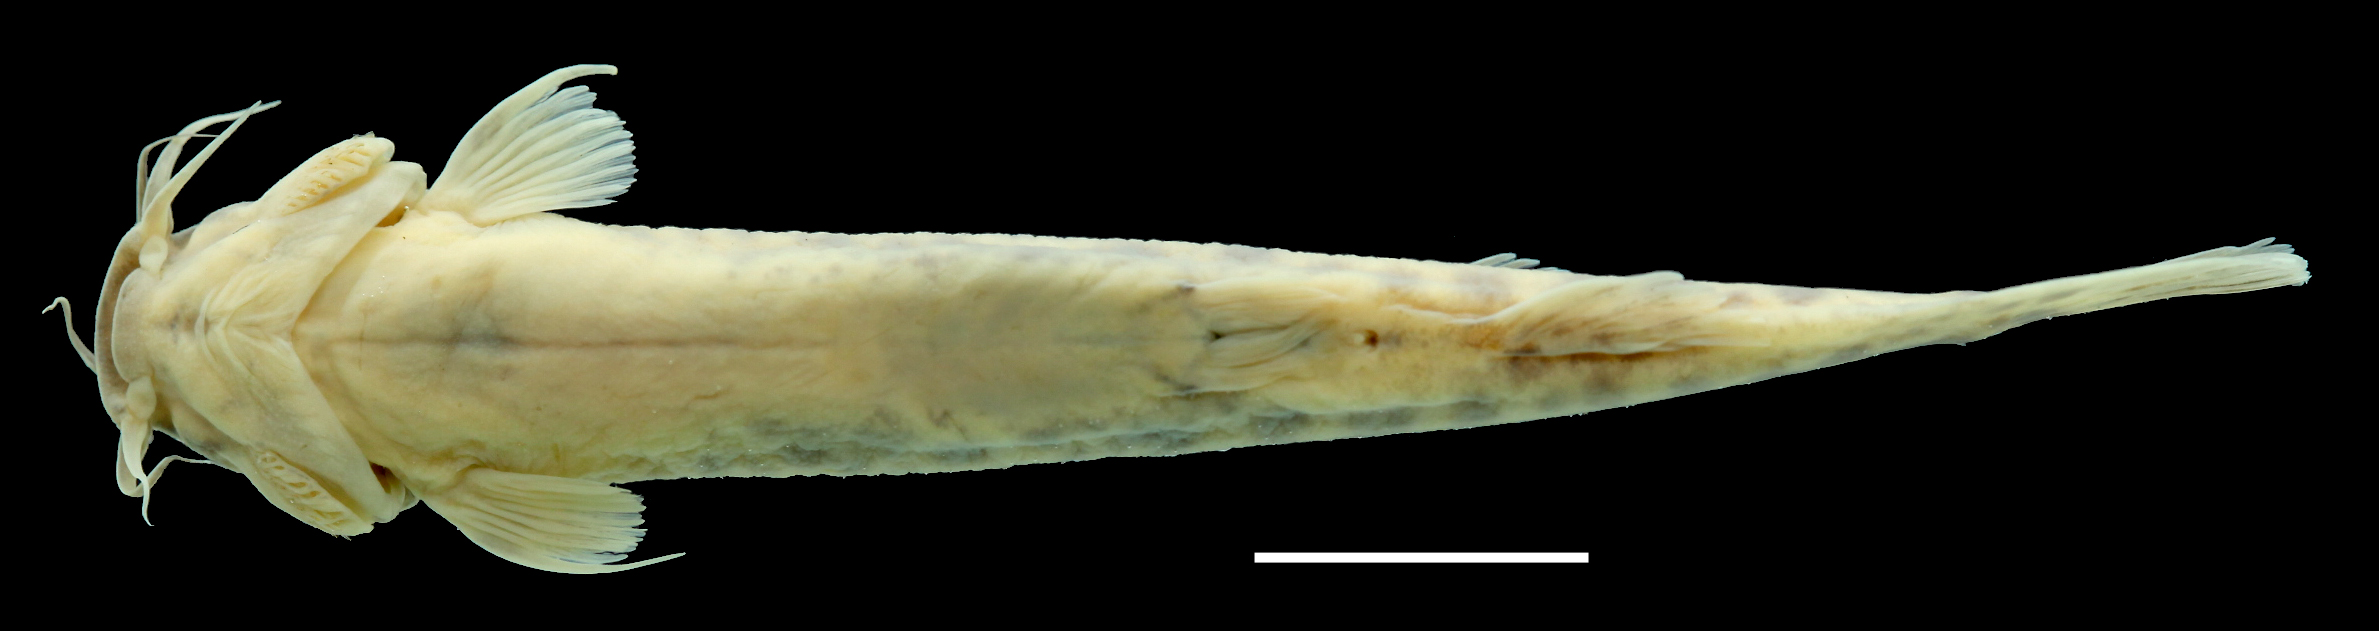 Paratype of <em>Trichomycterus ocanaensis</em>, IAvH-P-11115_Ventral, 57.2 mm SL (scale bar = 1 cm). Photograph by C. DoNascimiento